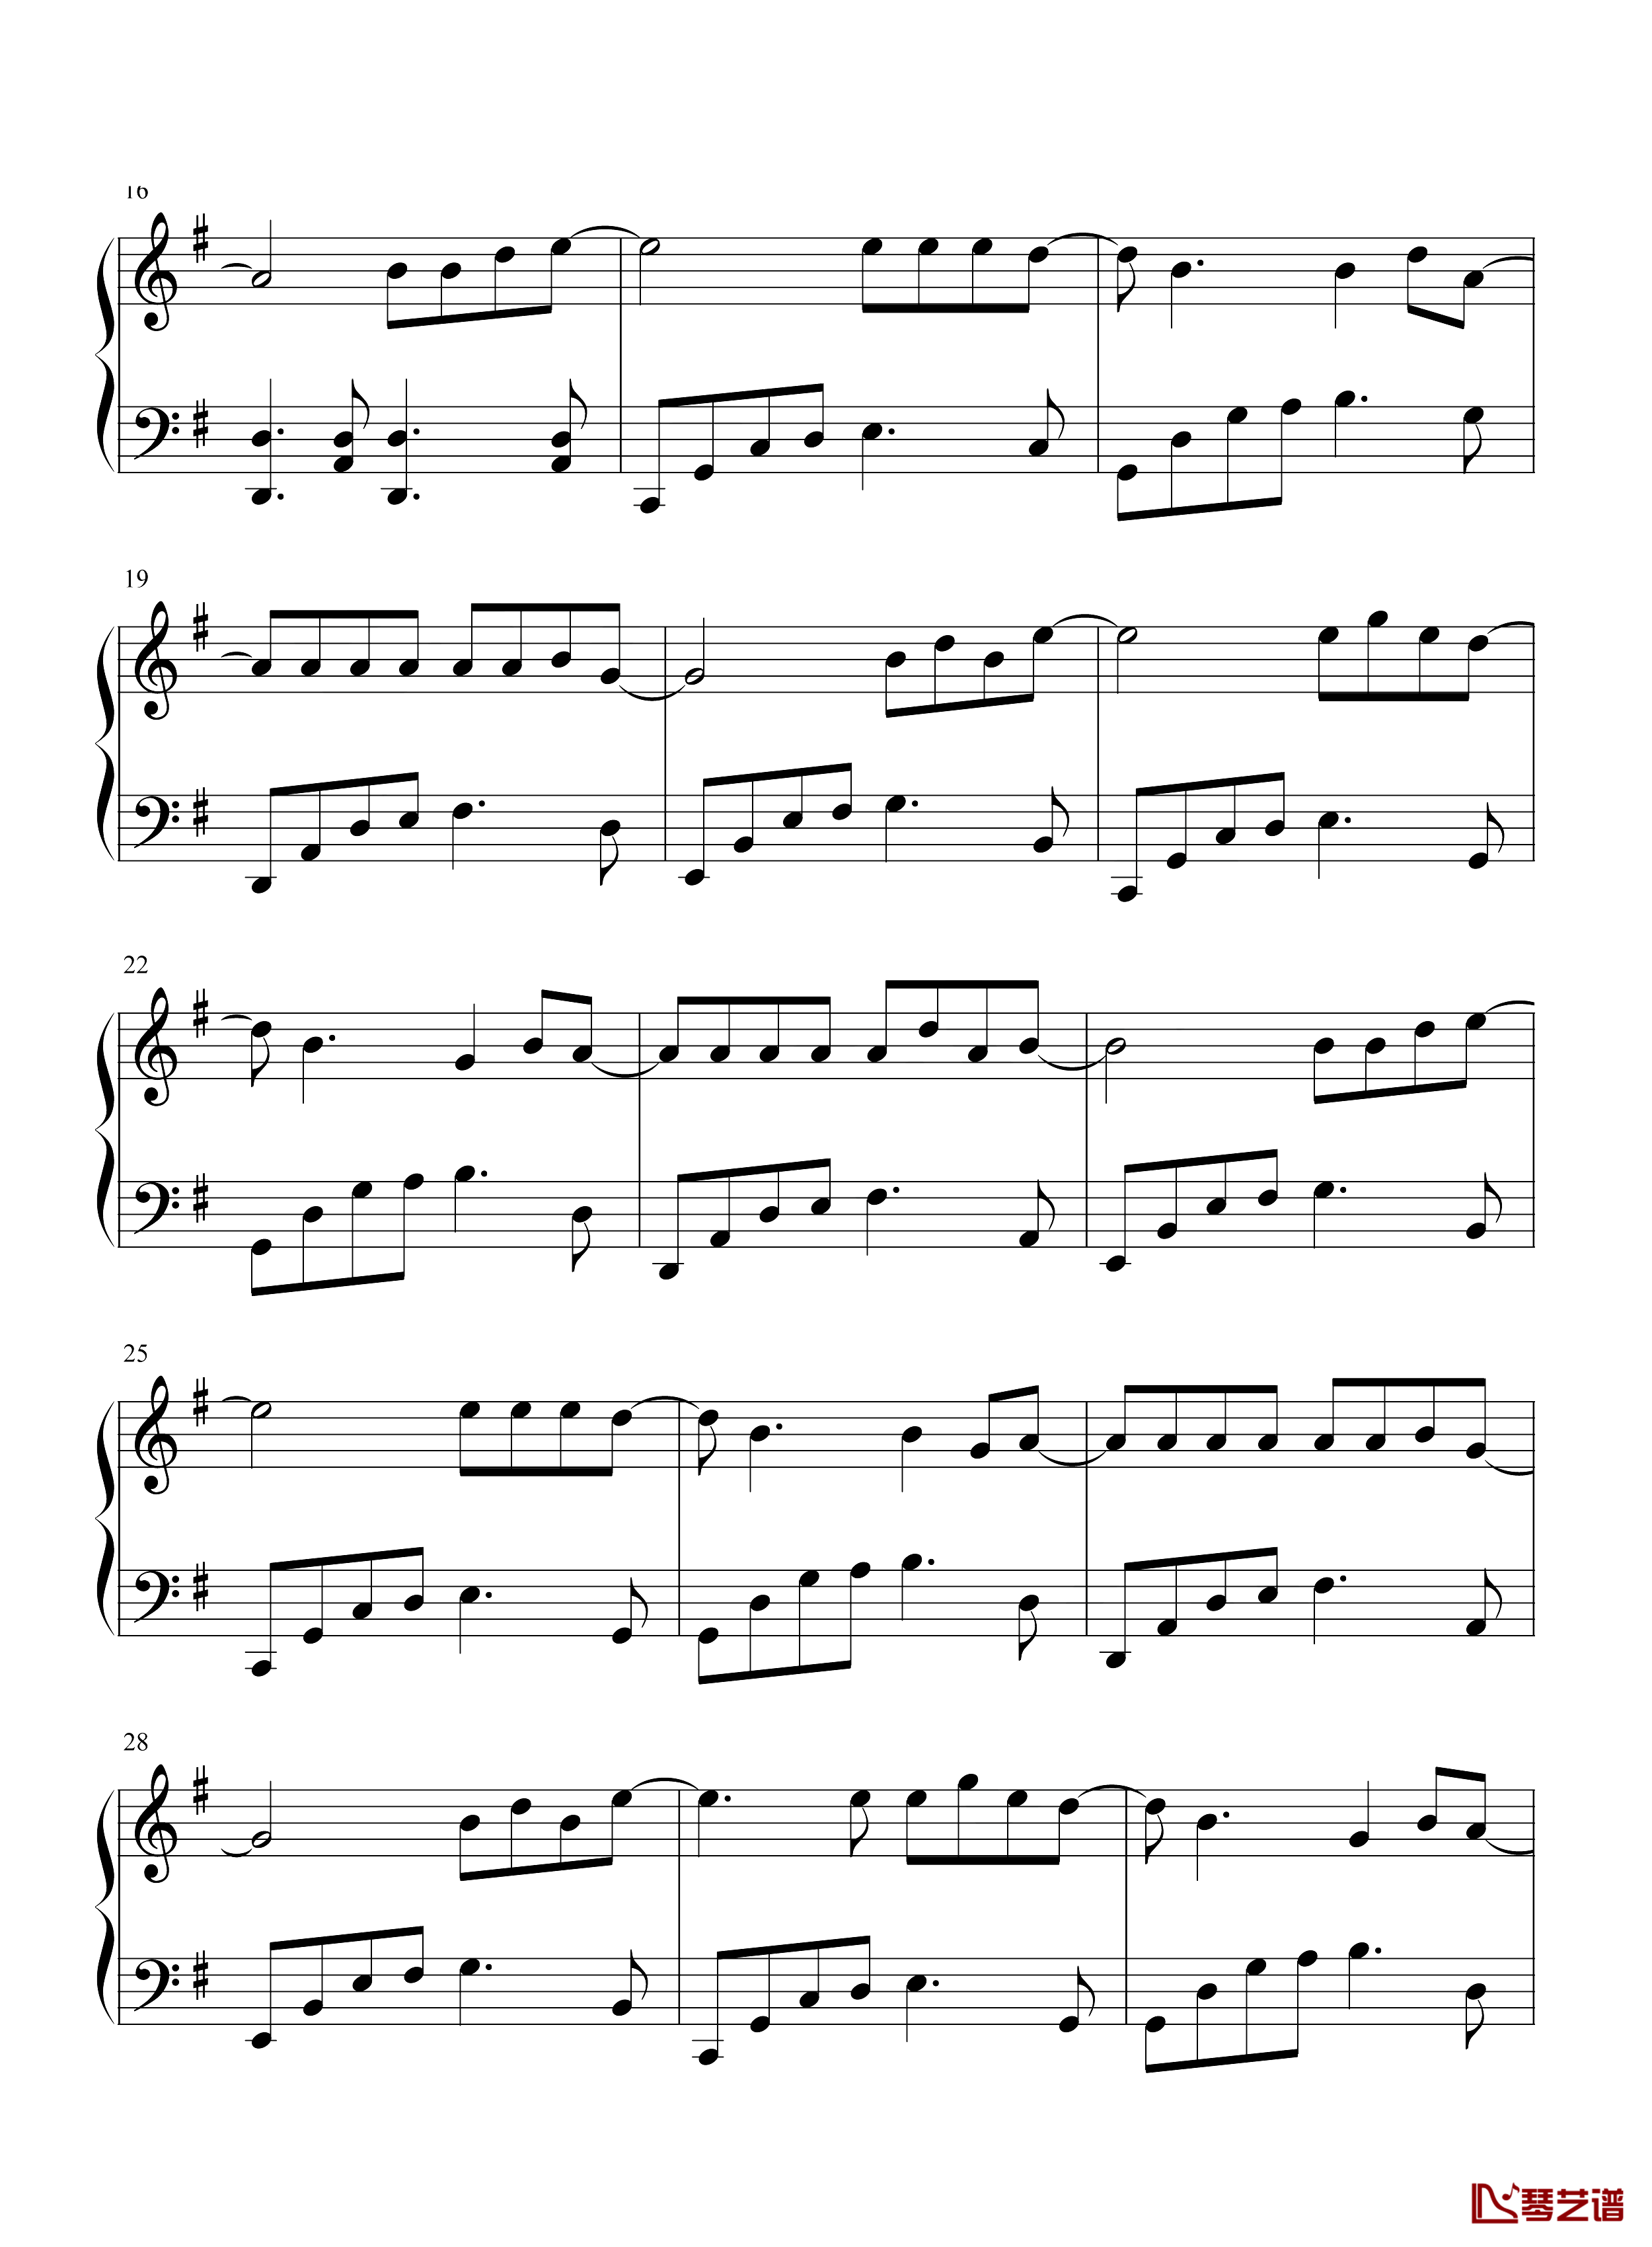 阿衣莫钢琴谱-简单版-阿吉太组合-抖音热歌-优美旋律演绎不一样的民歌2